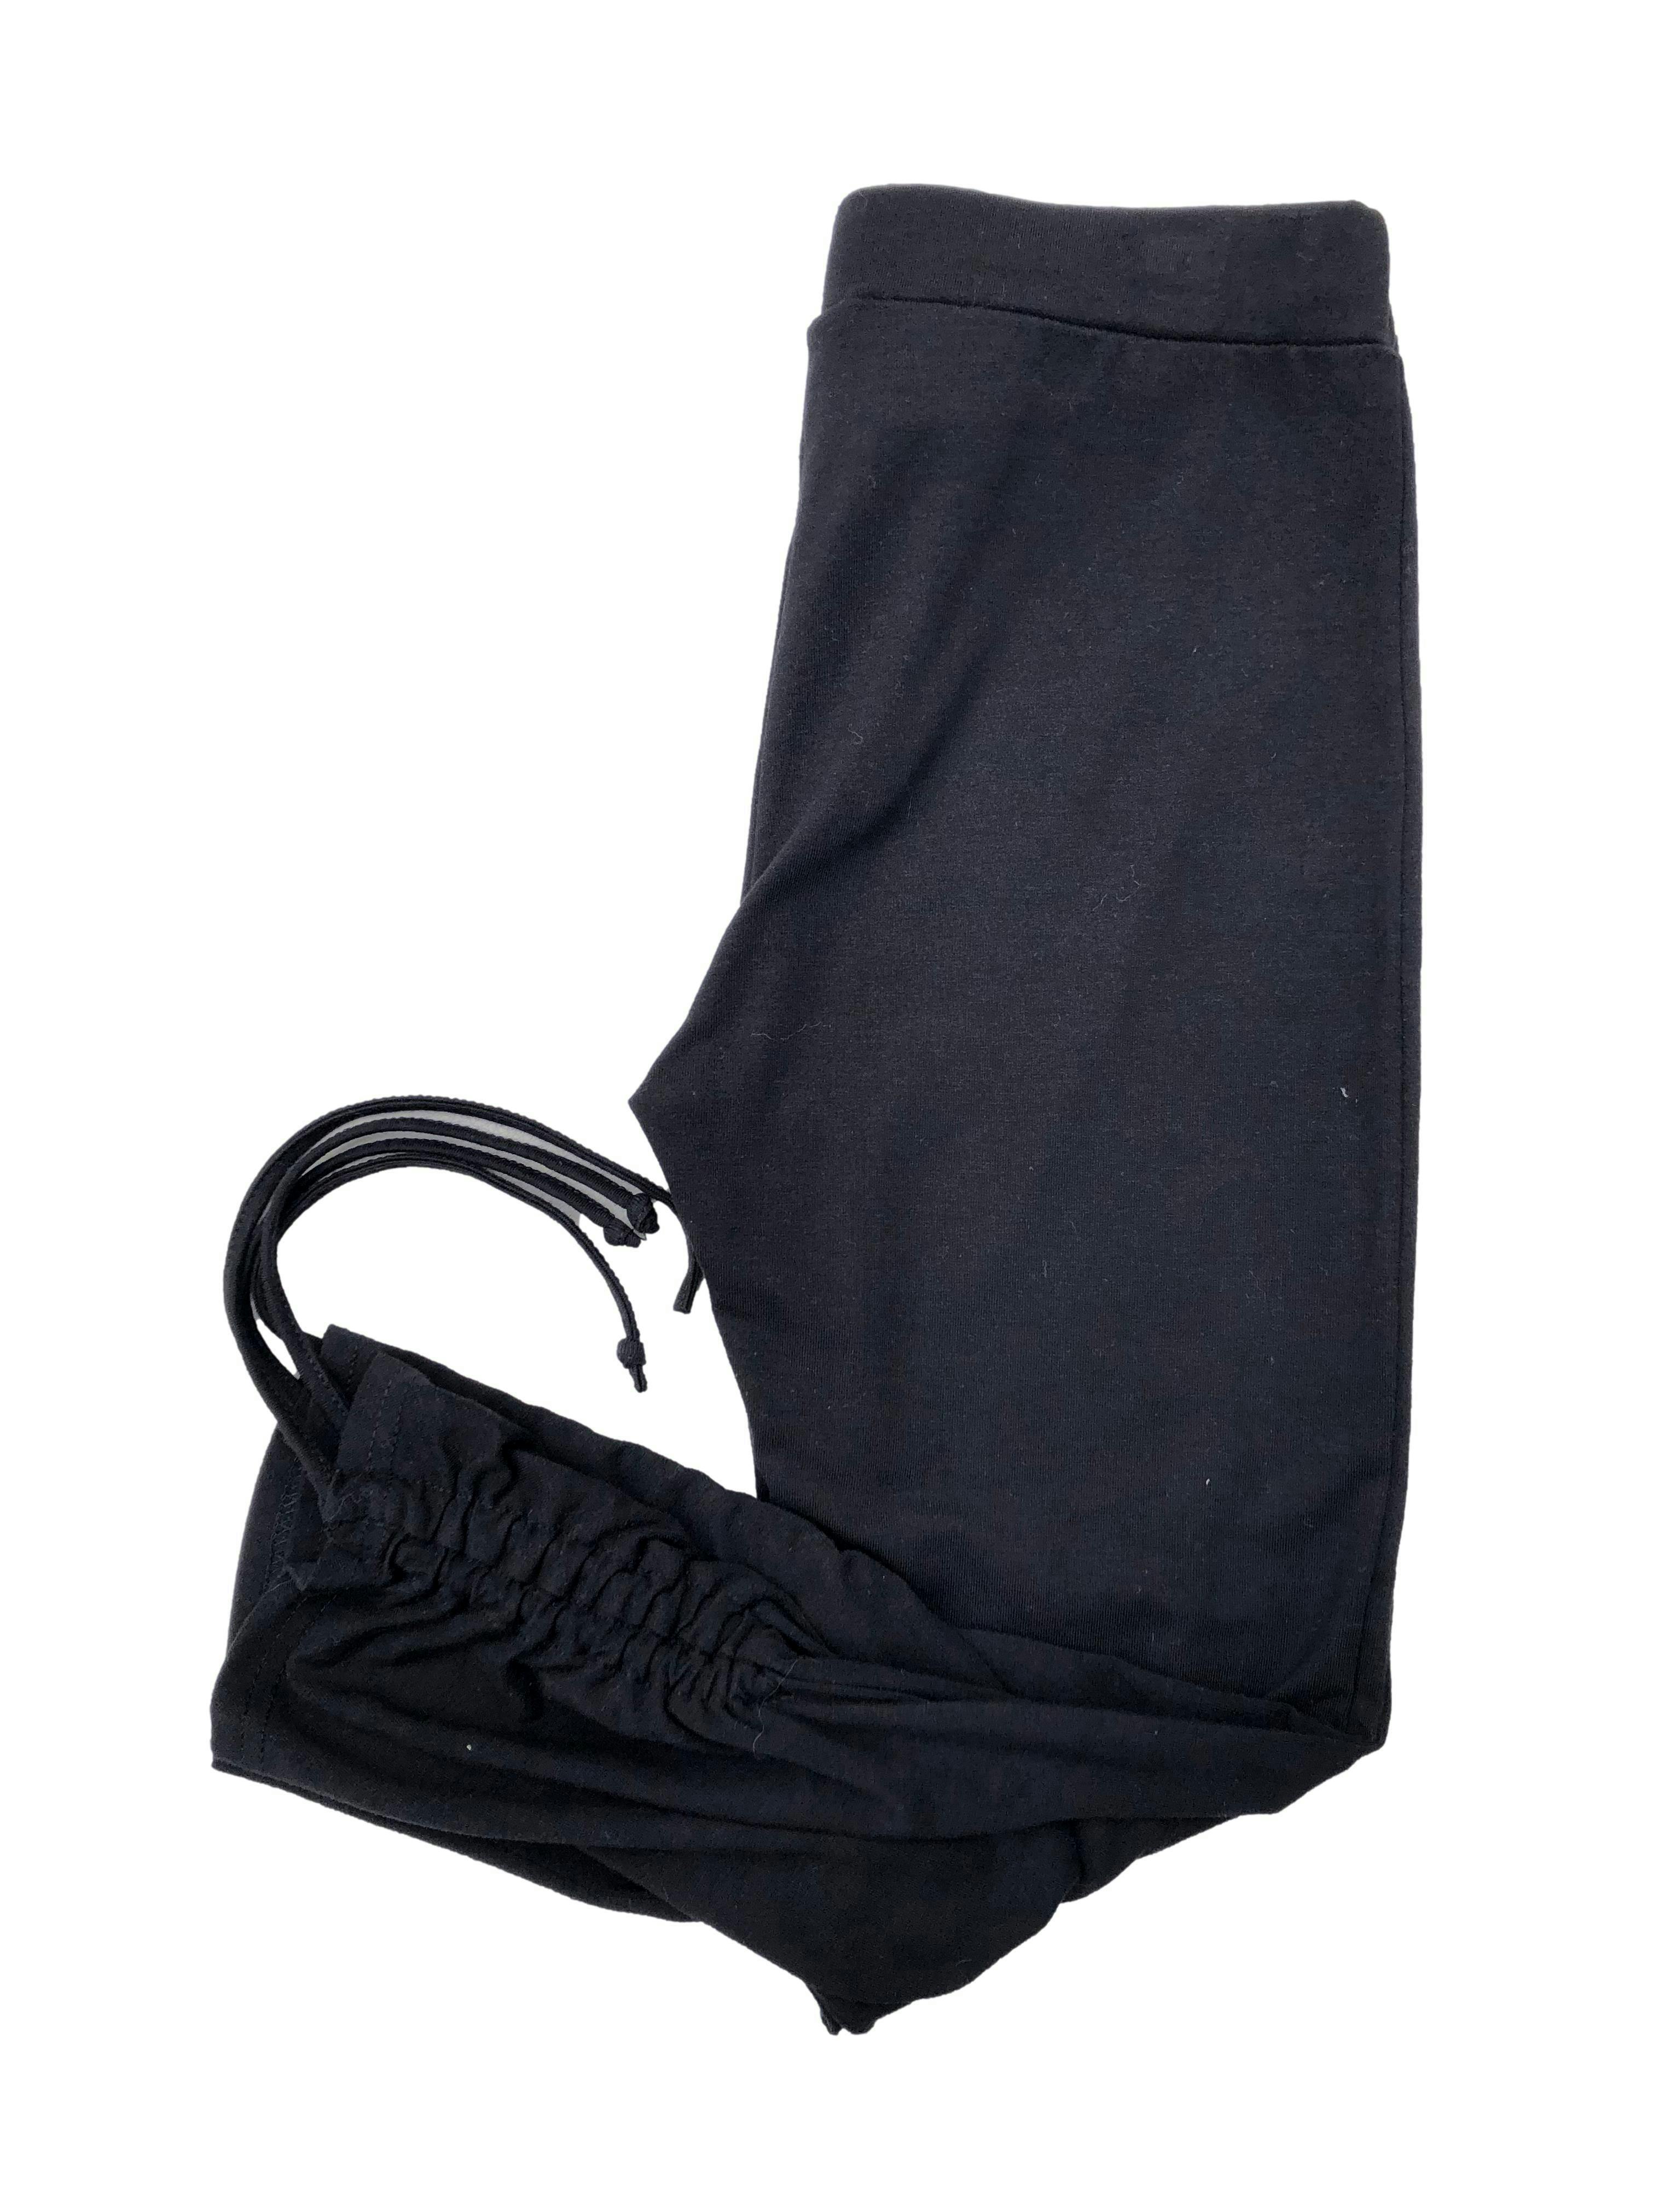 Leggings negra de algodón stretch, se recoge en la basta. Cintura 66cm Tiro 24cm Largo 70cm